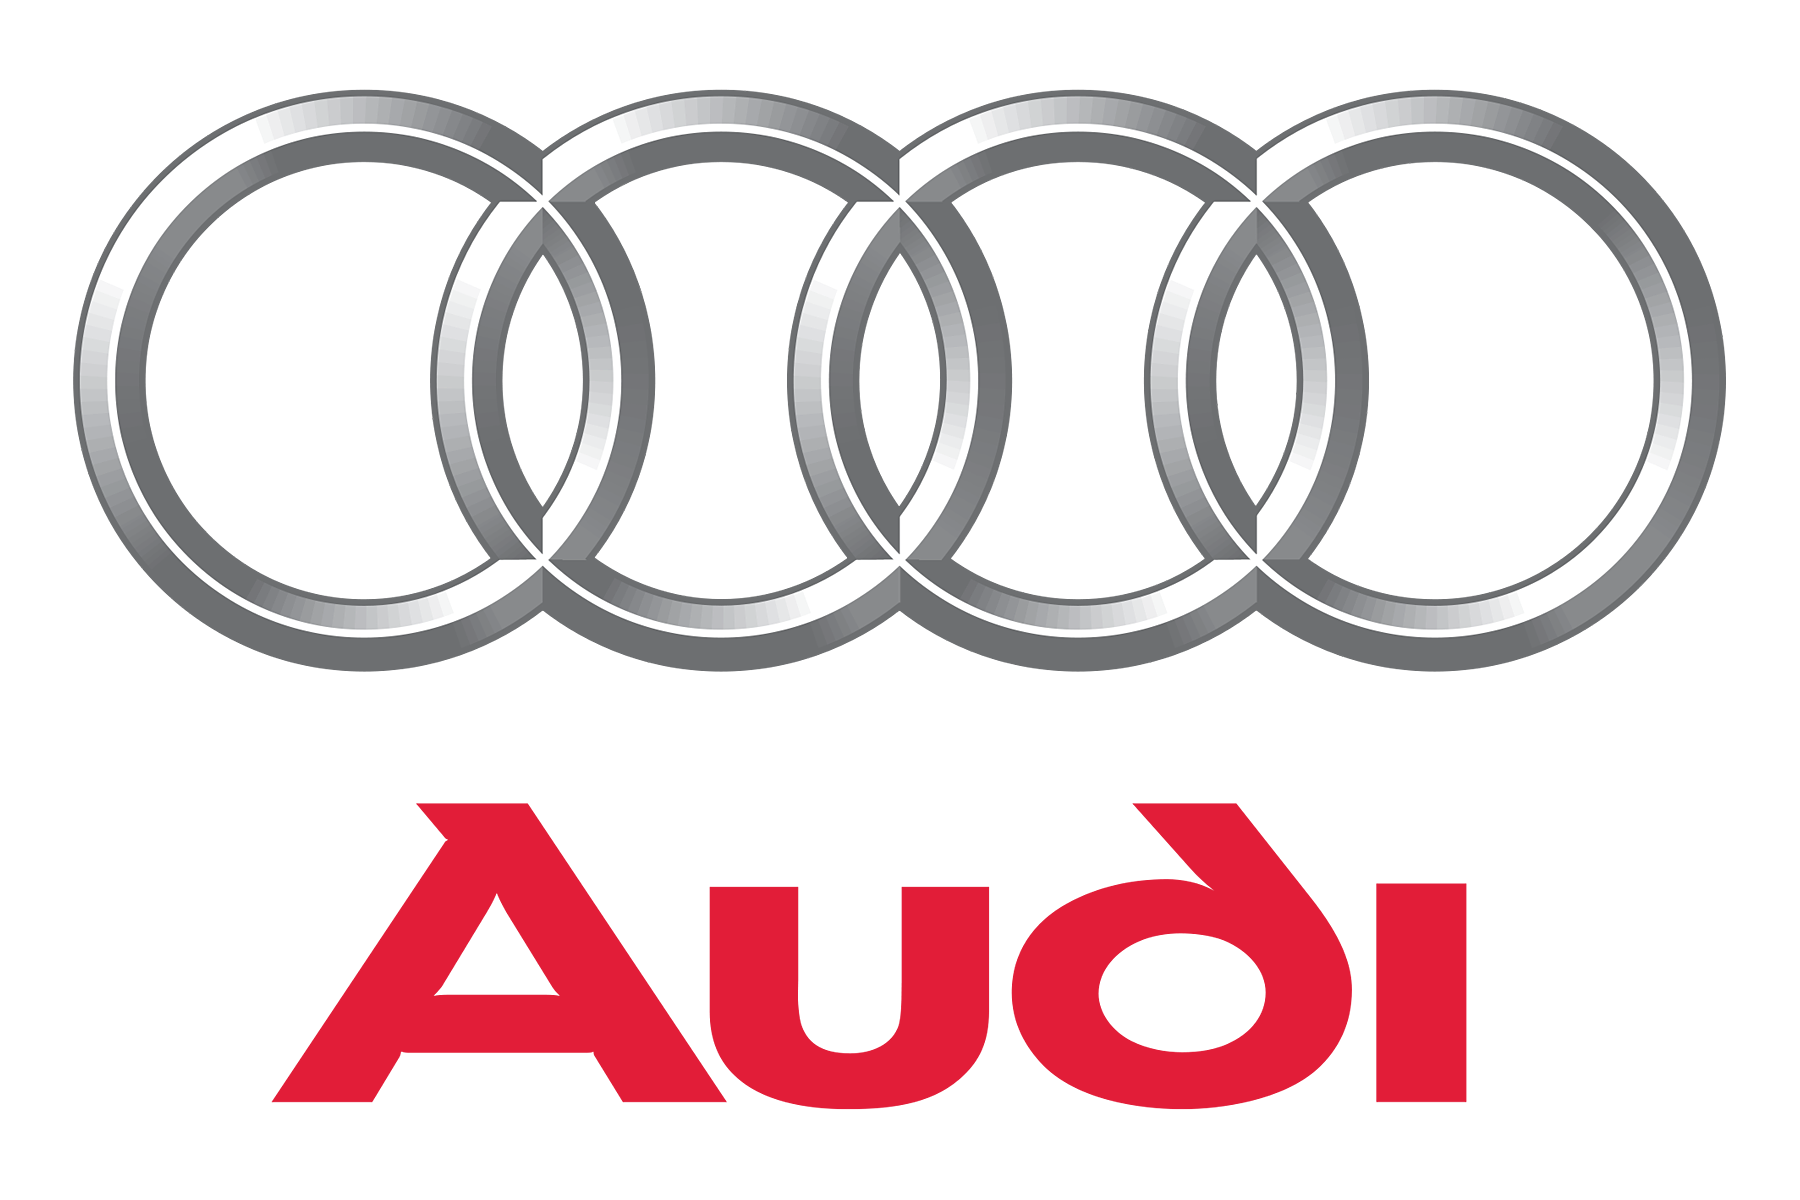 Audi Quattro Audi A6 Car Volkswagen, audi, text, logo, car png | PNGWing